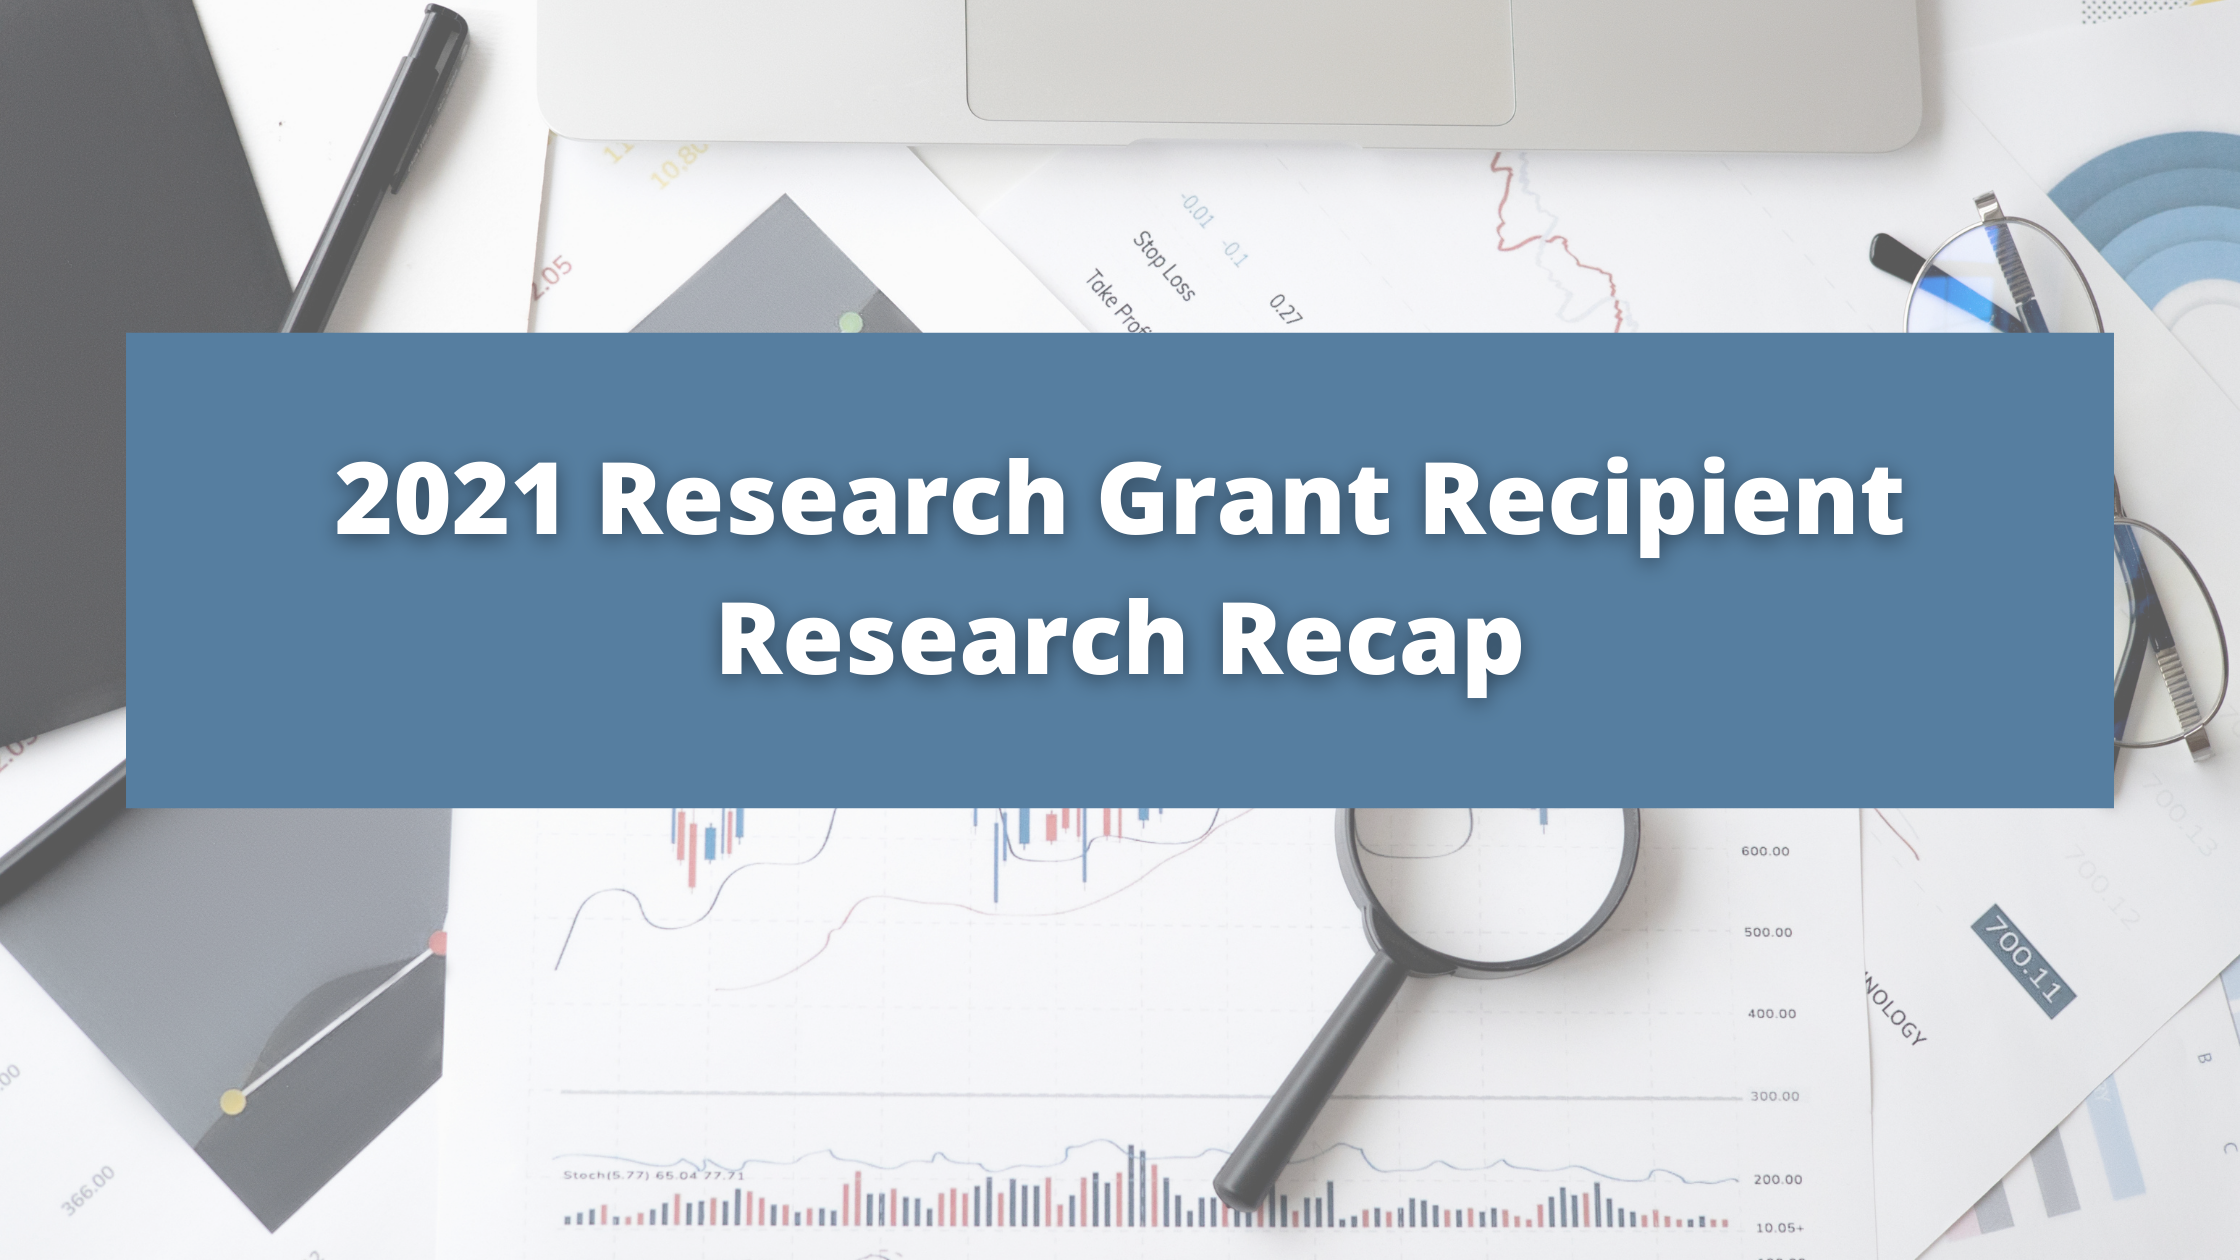 2021 Research Grant Recipient Research Recap!